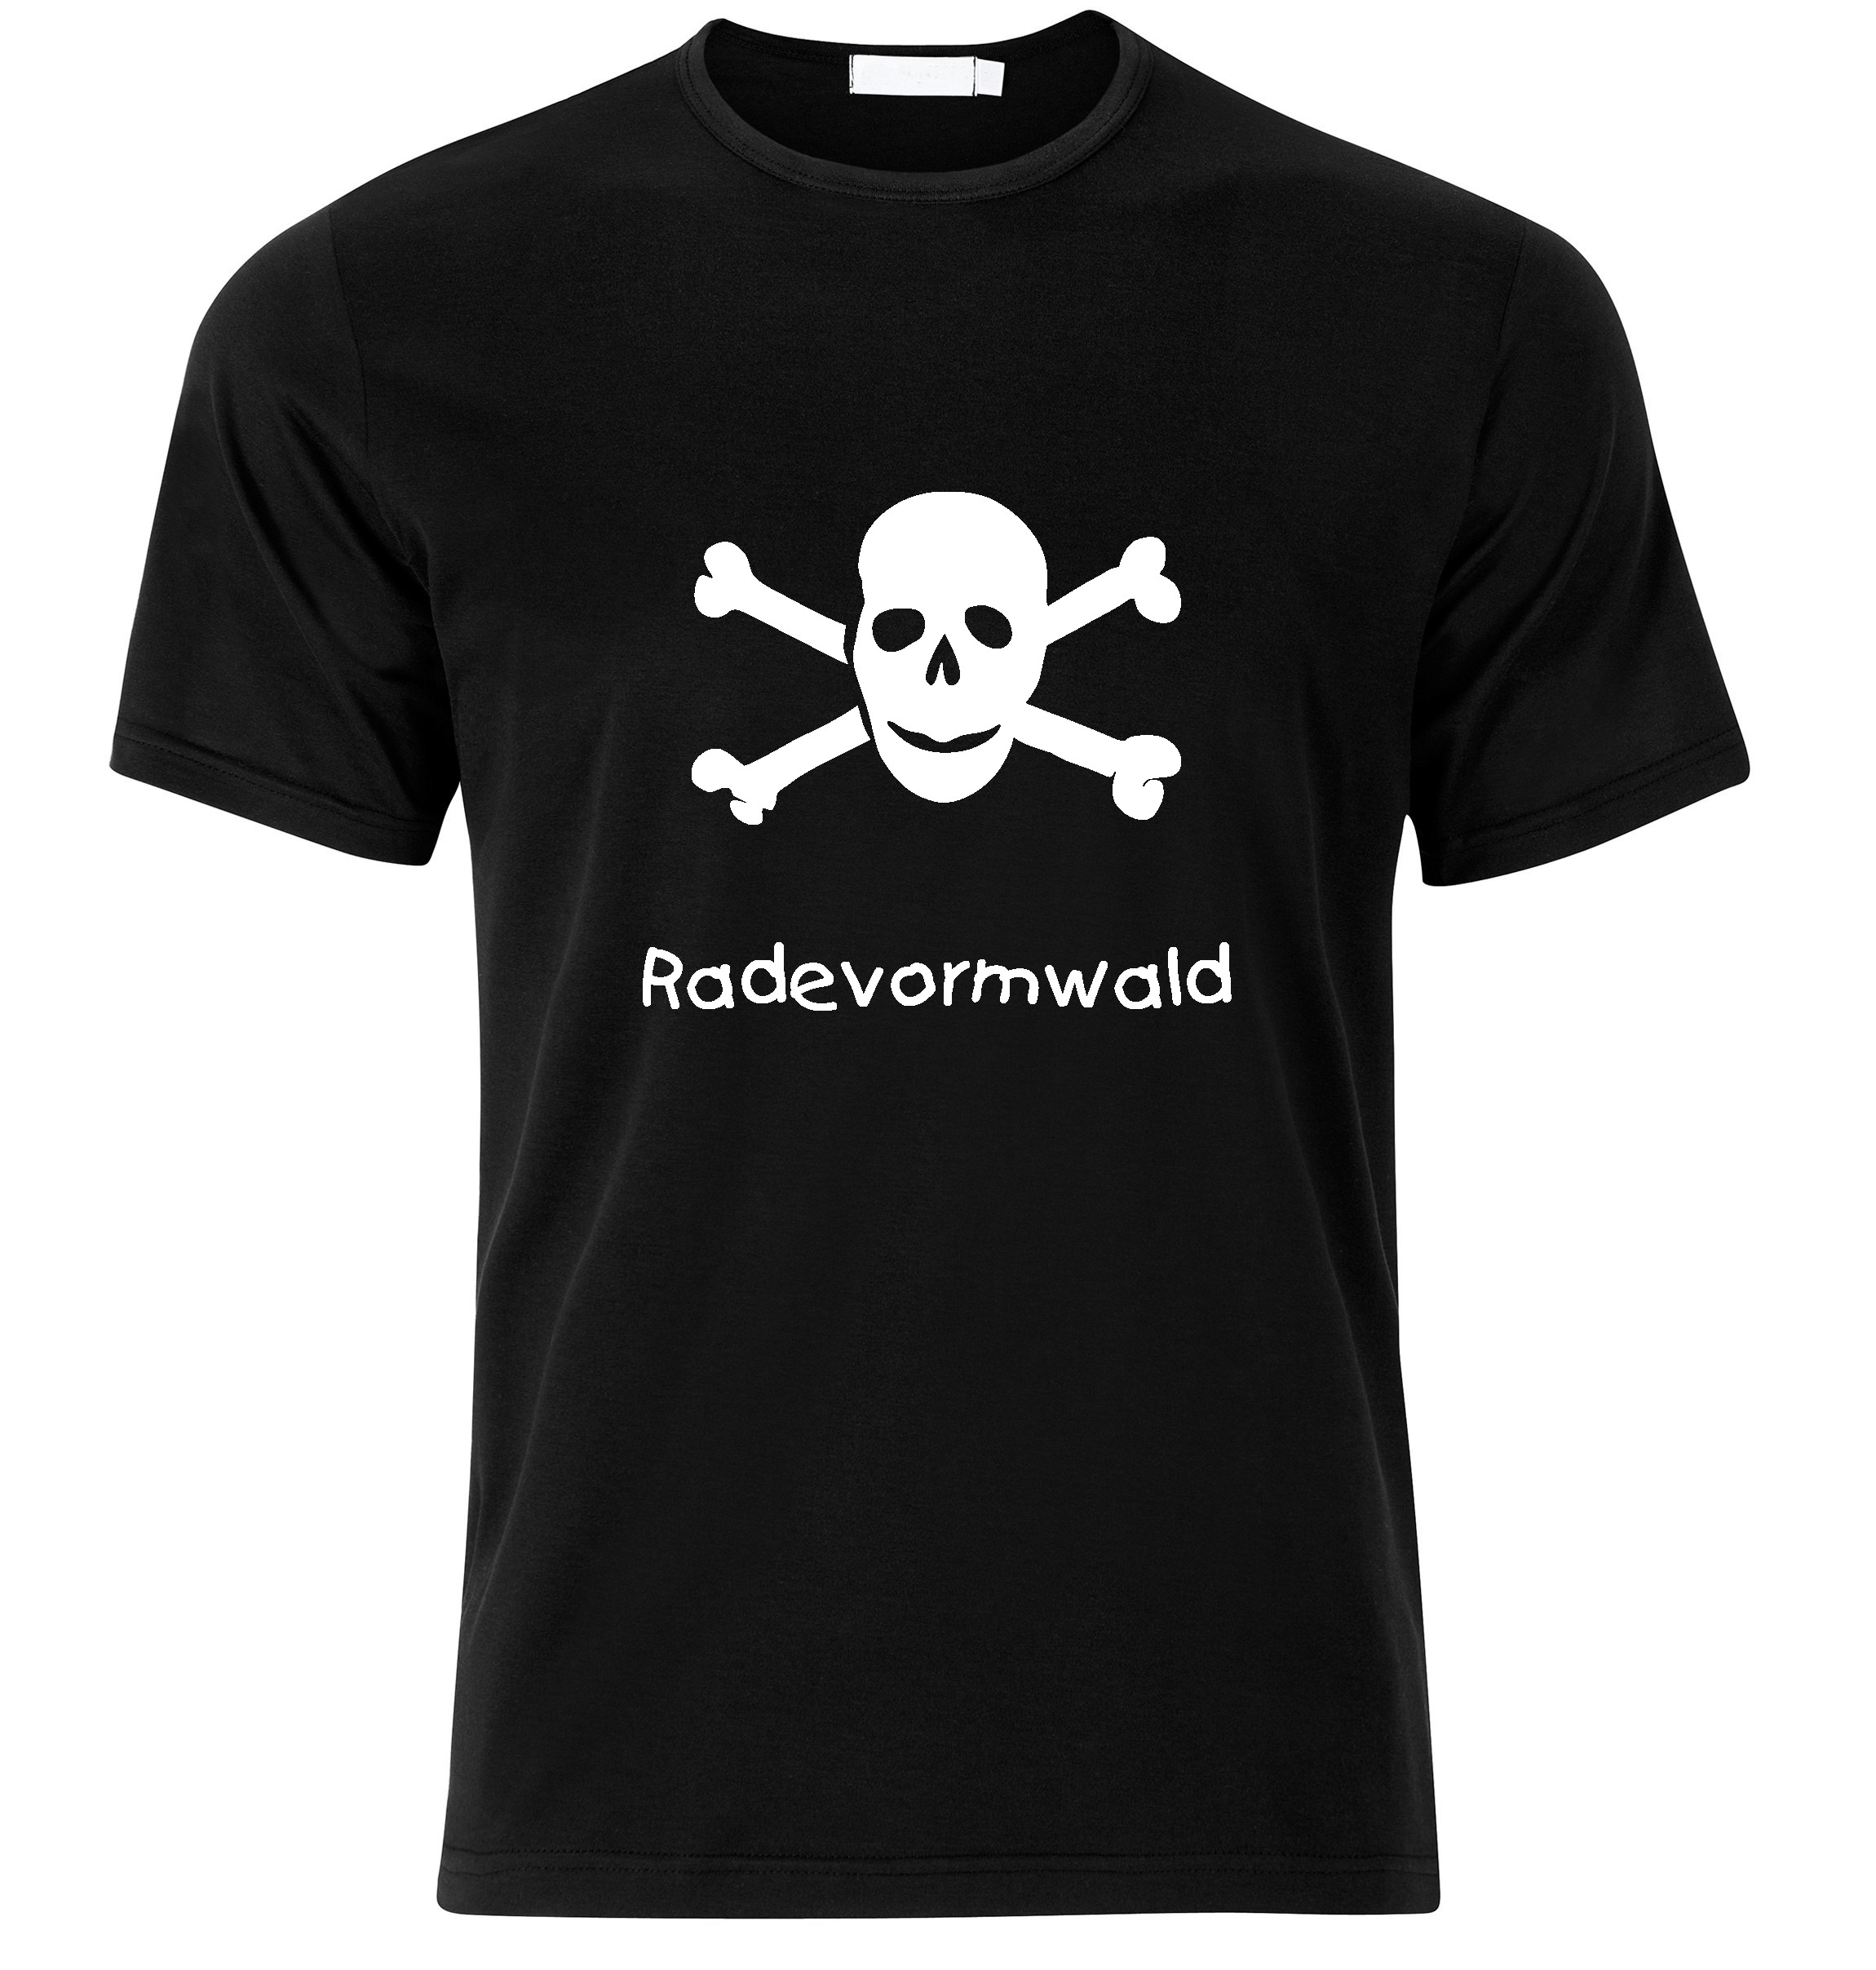 T-Shirt Radevormwald Jolly Roger, Totenkopf